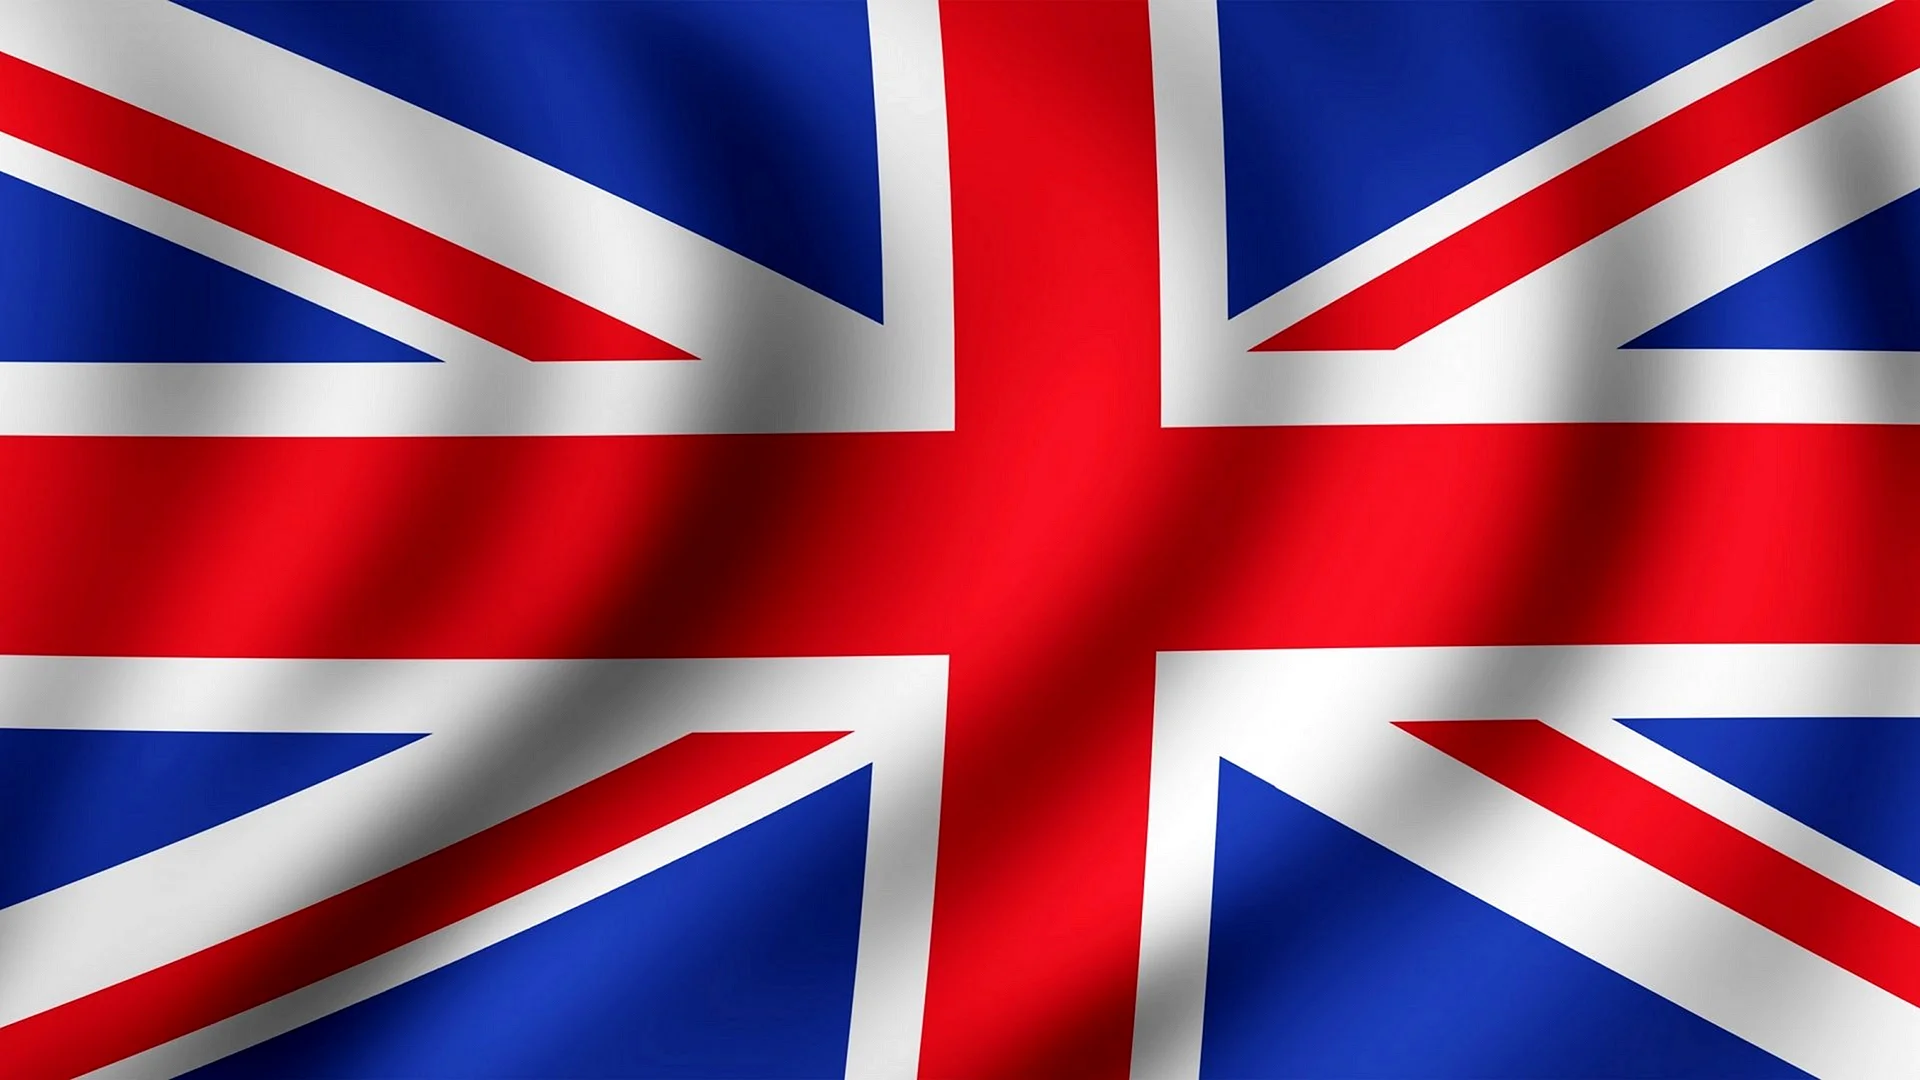 Английский флаг